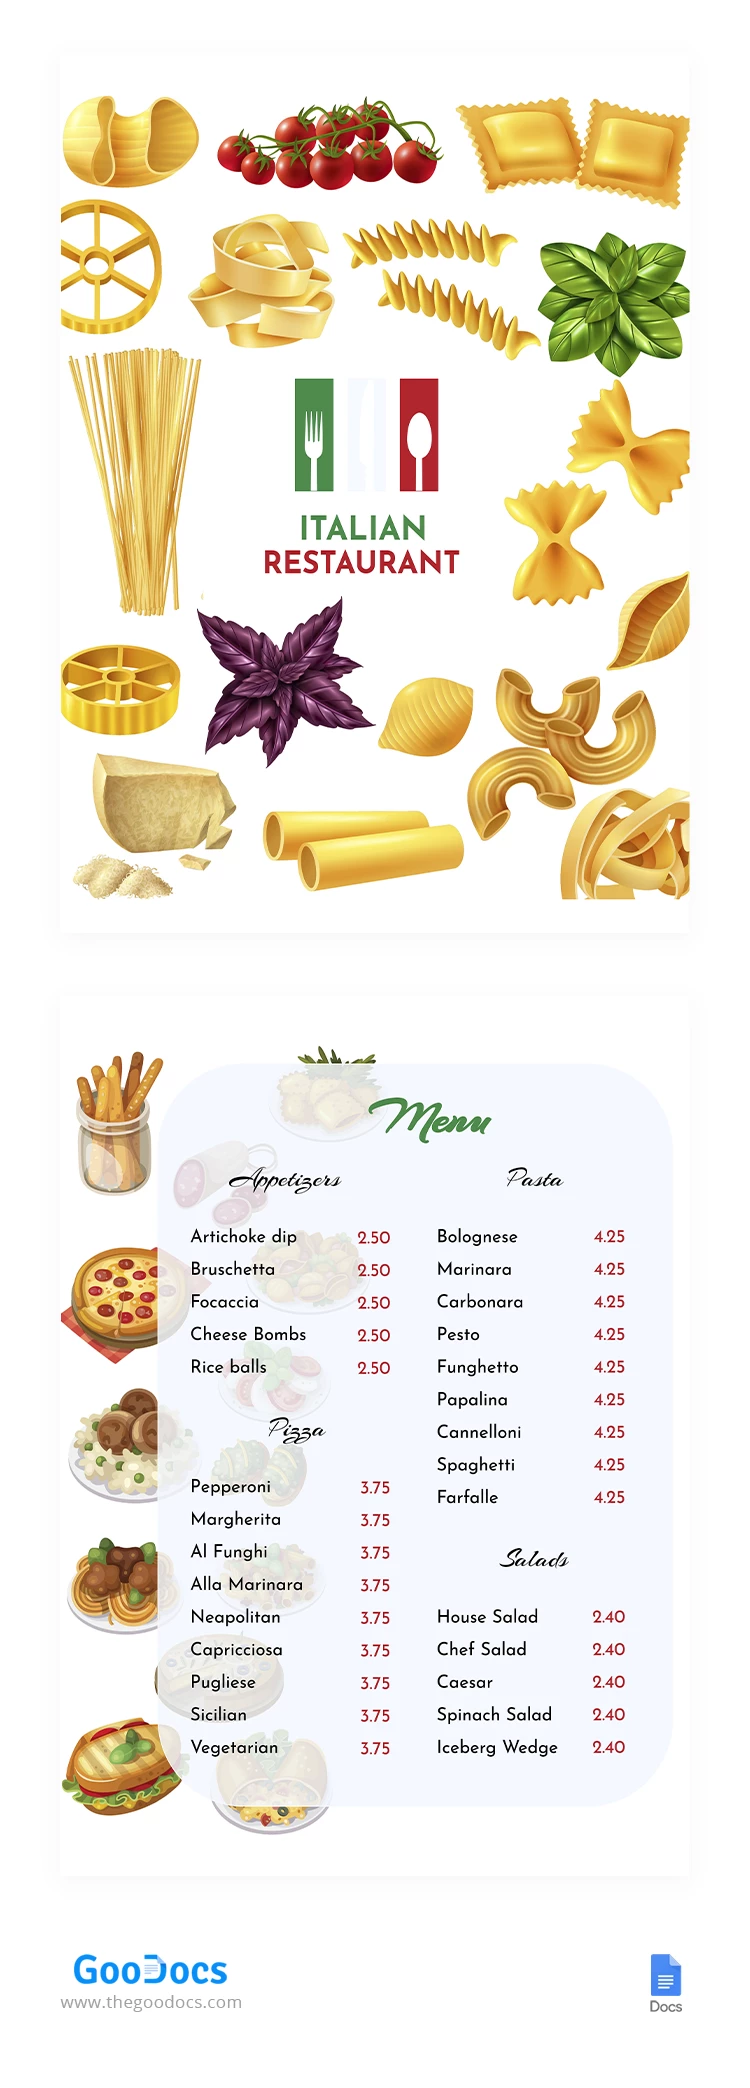 Menu do Restaurante Italiano - free Google Docs Template - 10064558